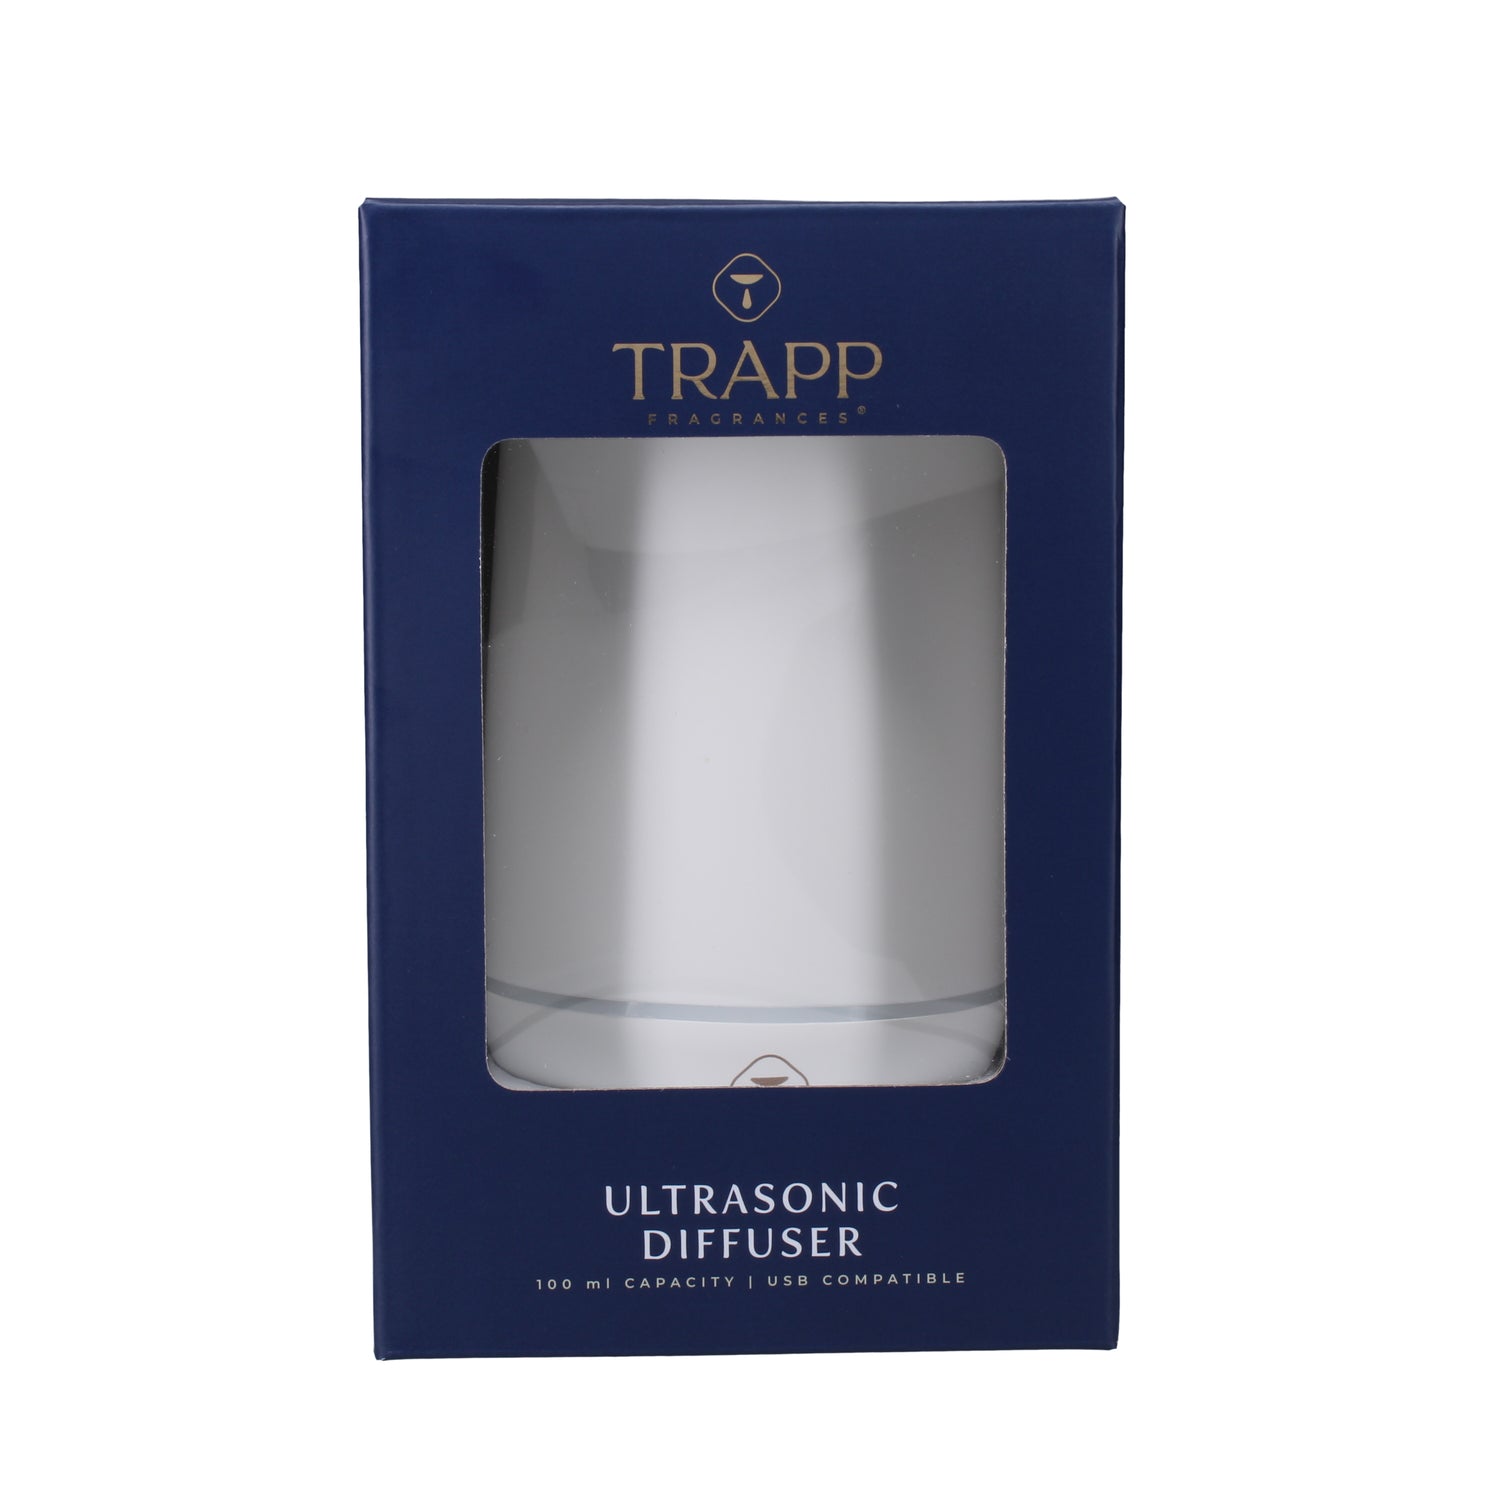 Ultrasonic Diffuser Oil Trapp Fragrances Color: Blue, Scent: Fresh